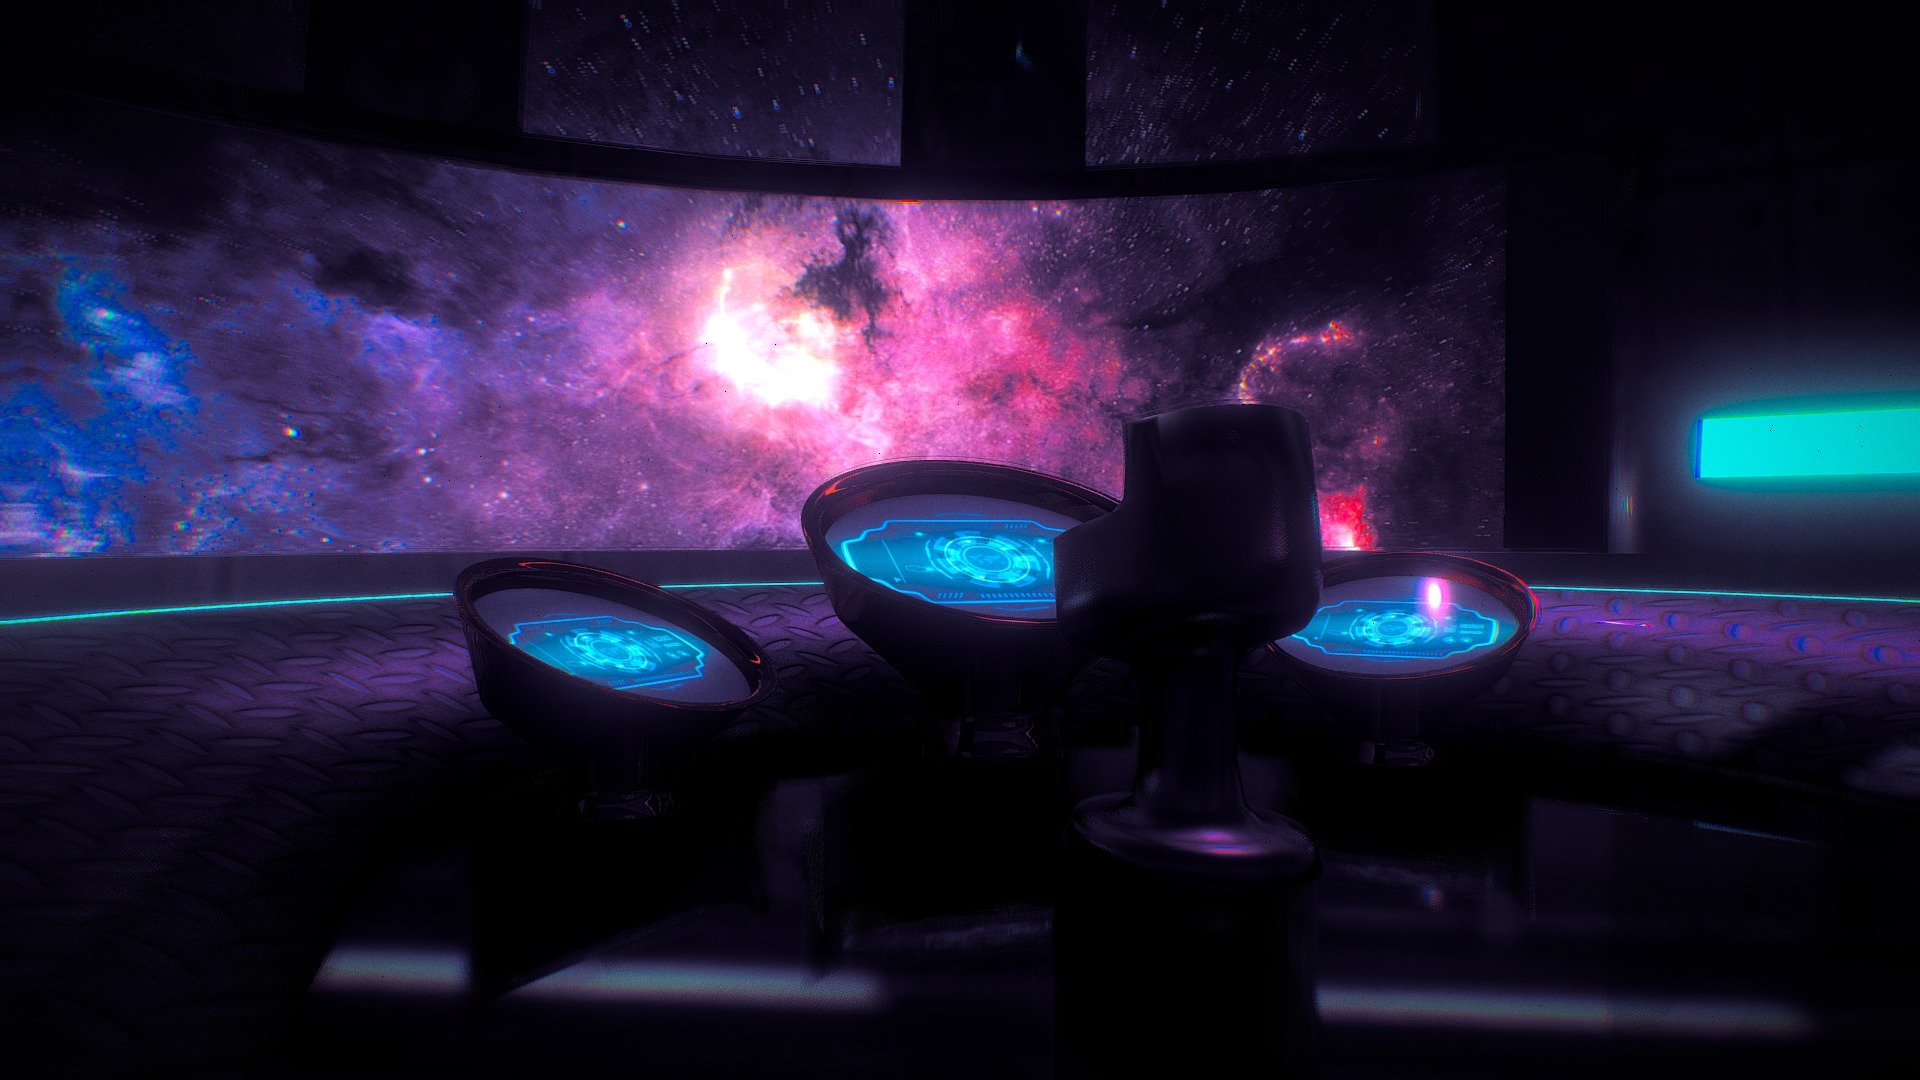 Sci-Fi Spaceship Bridge - Download Free 3D model by dylanheyes  (@dylanheyes) [aaa5259]